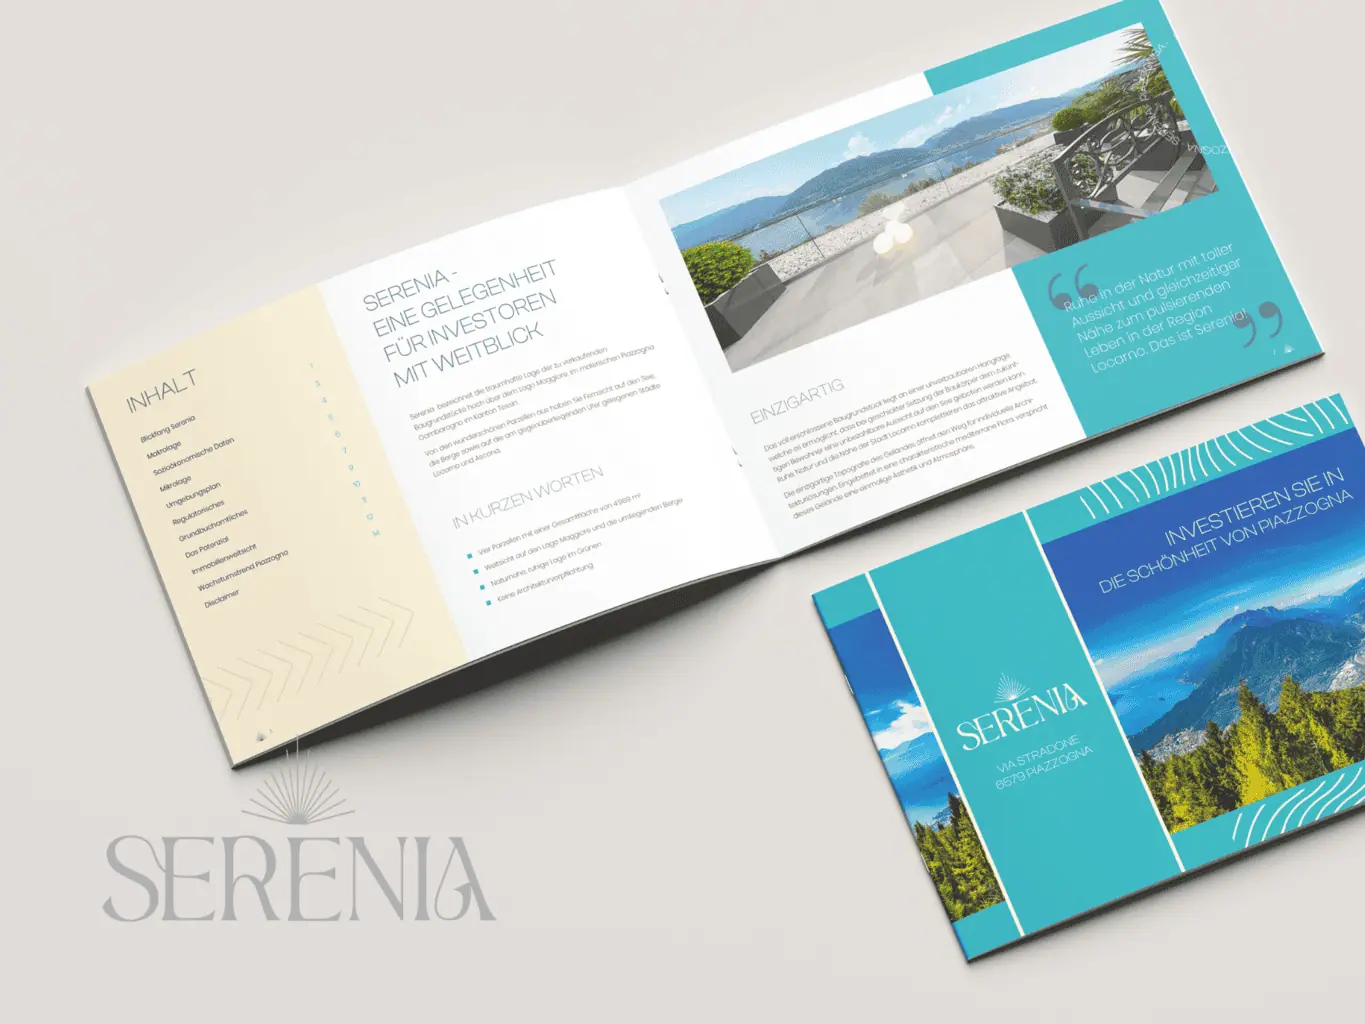 Dreifach gefaltetes Broschürenlayout für „Serena“, mit Textabschnitten, Bildern eines Balkons am Meer und Berglandschaften sowie einem blaugrünen Farbschema. Dies ist Teil unseres aktualisierten Designportfolios.